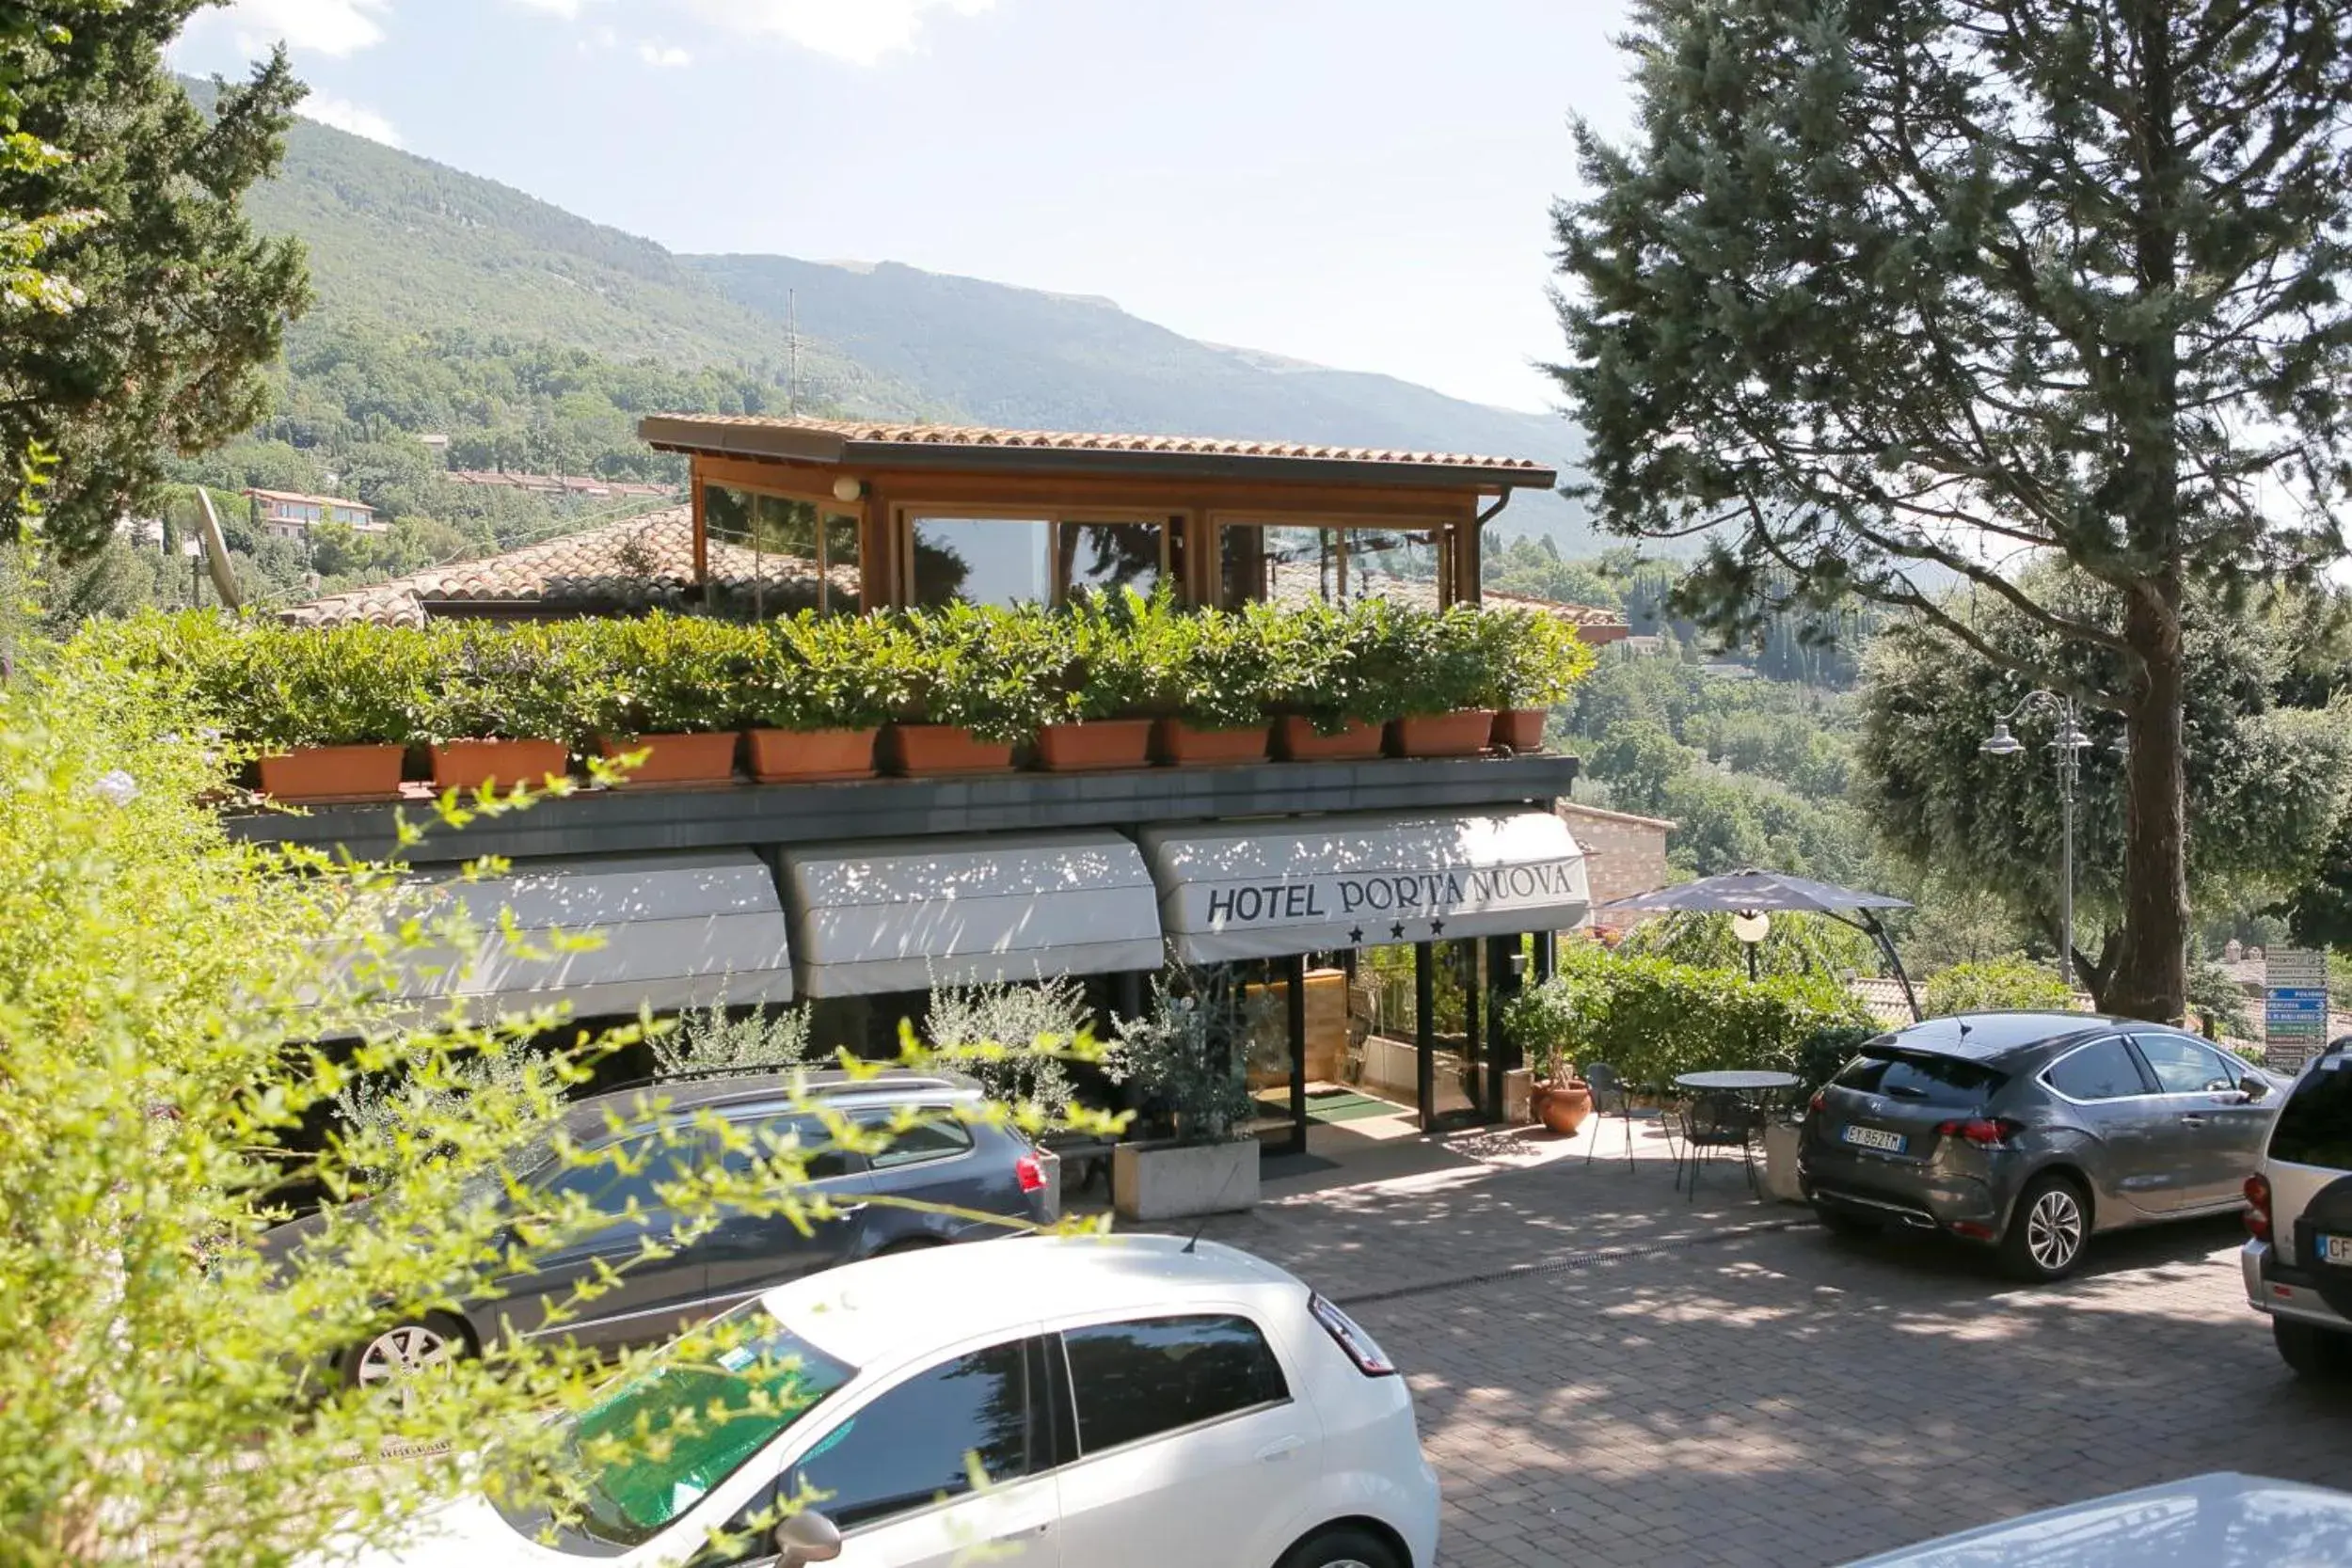 Area and facilities in Hotel Porta Nuova